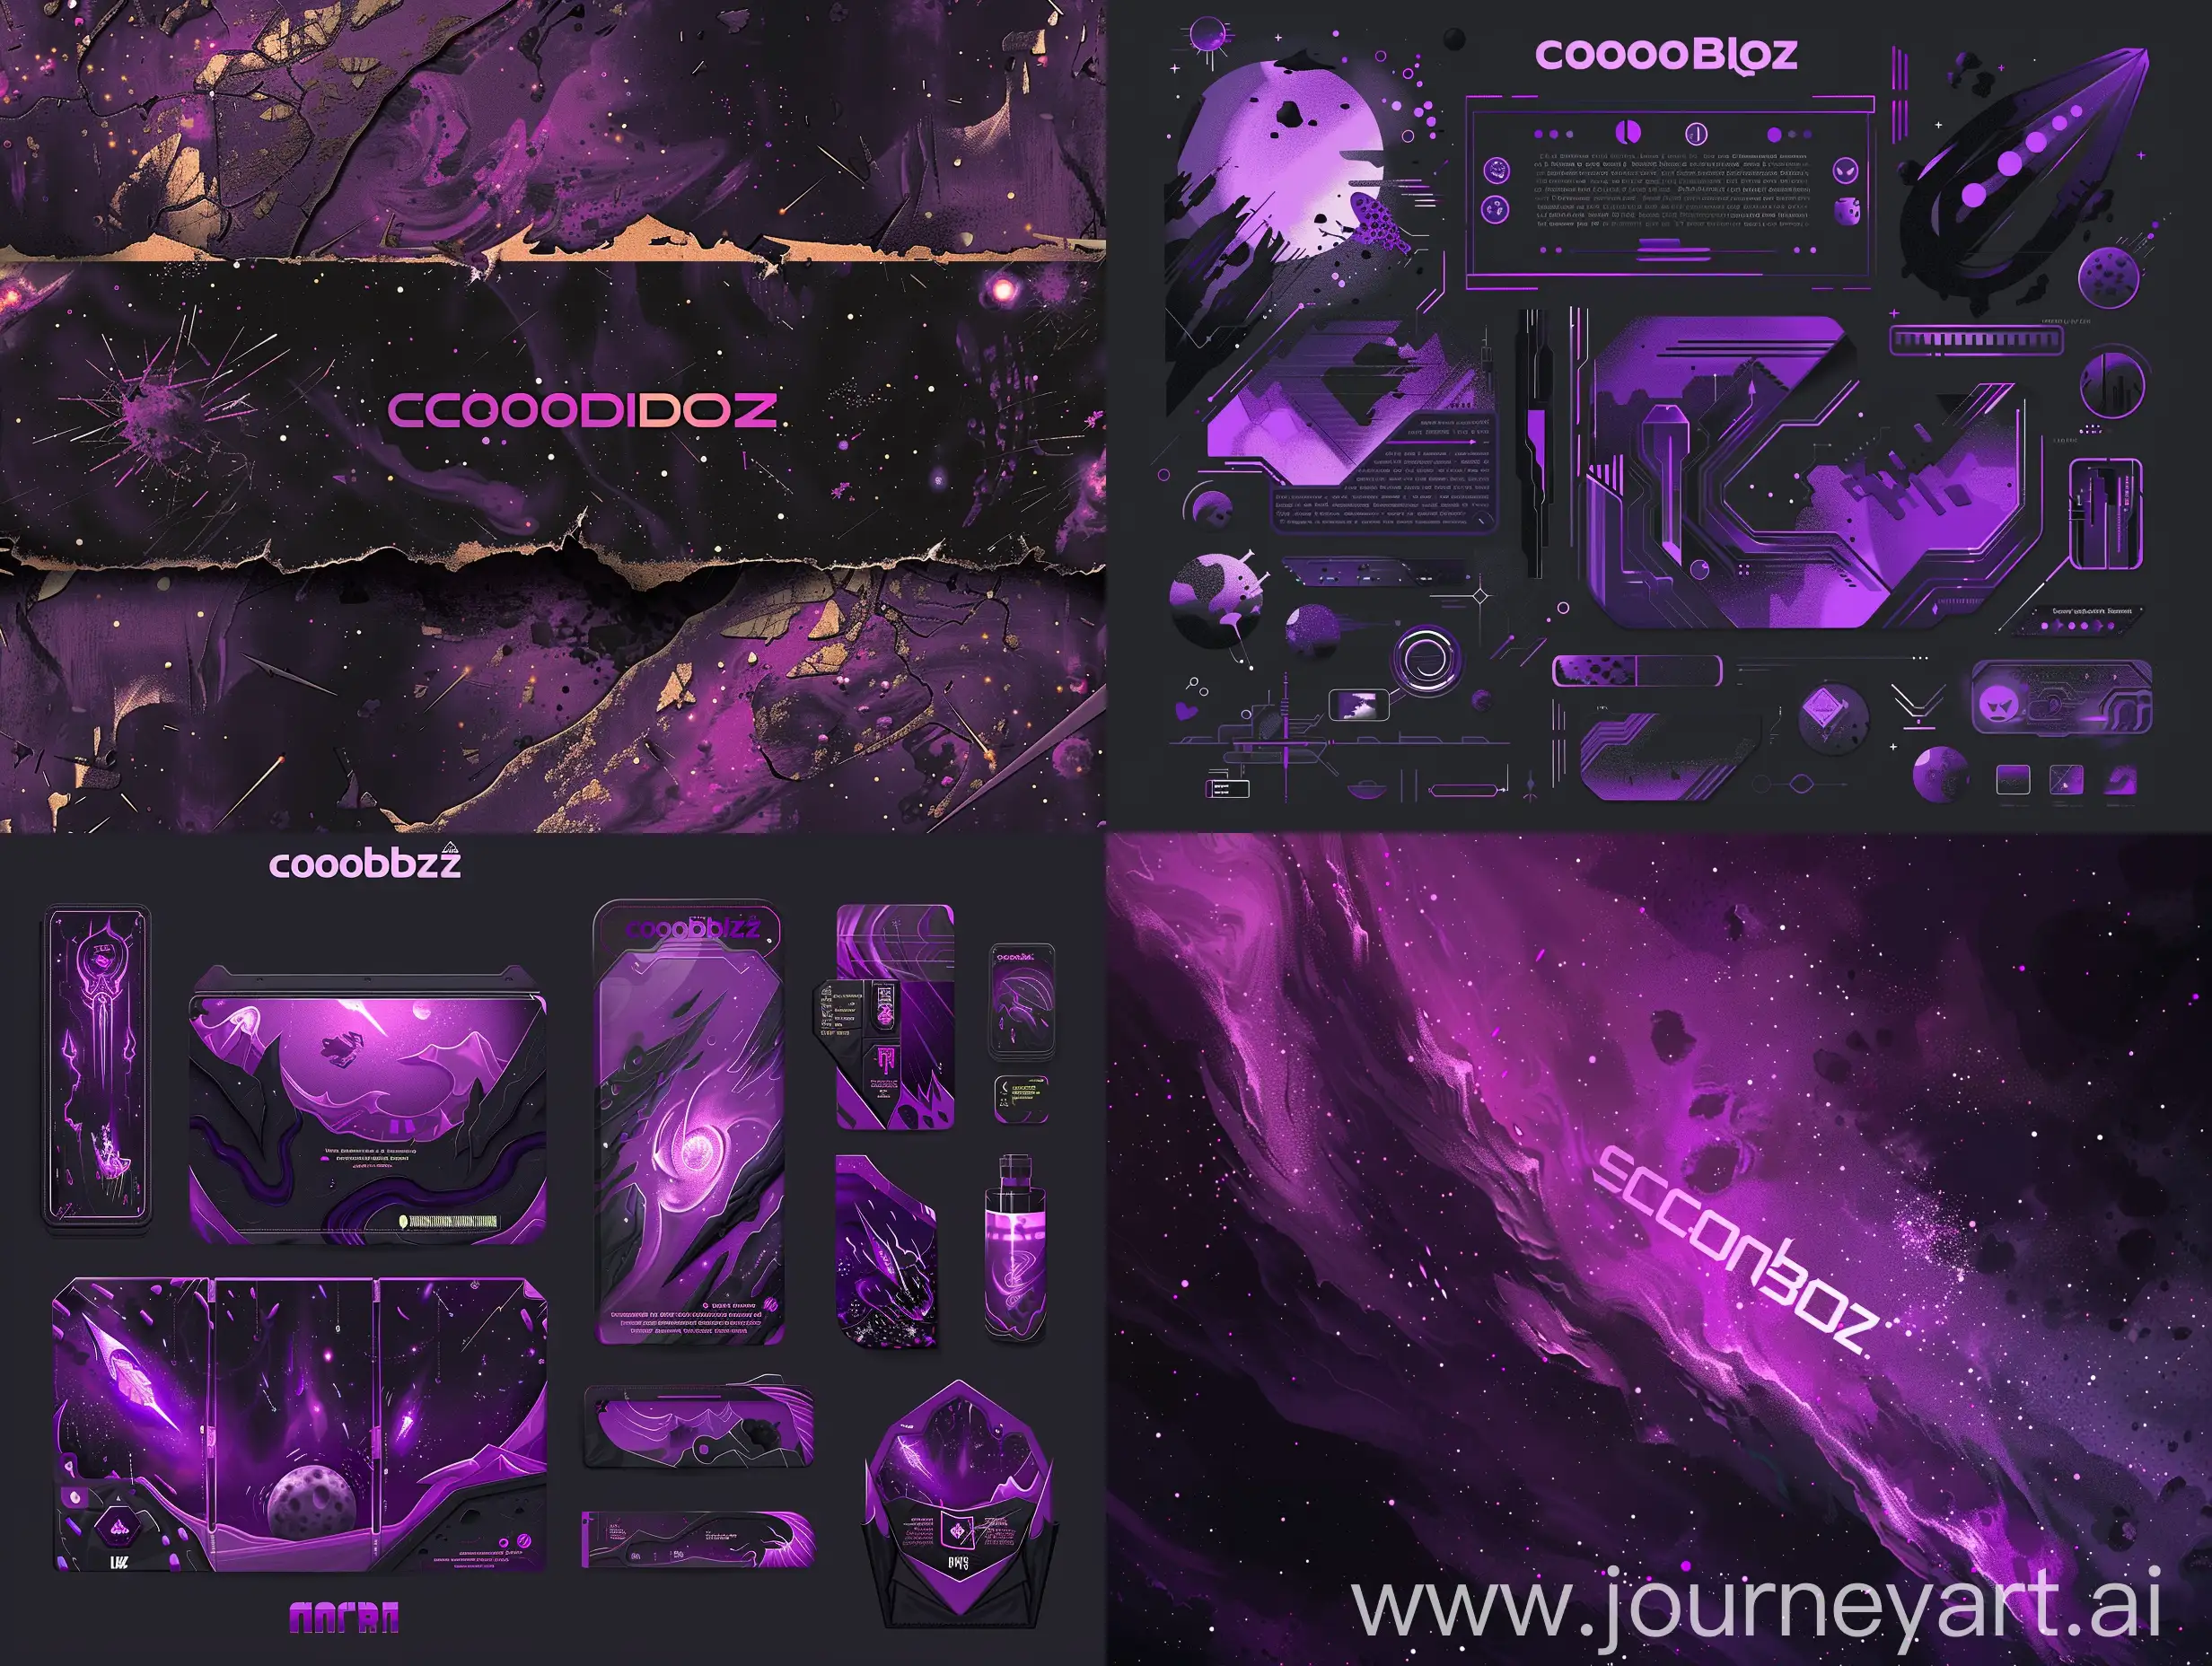 графика к бренду игр с космической тематикой CosmoBioz, фиолетовые, сиреневые, черные оттенки, космическое вторжение, эпичность, текстуры